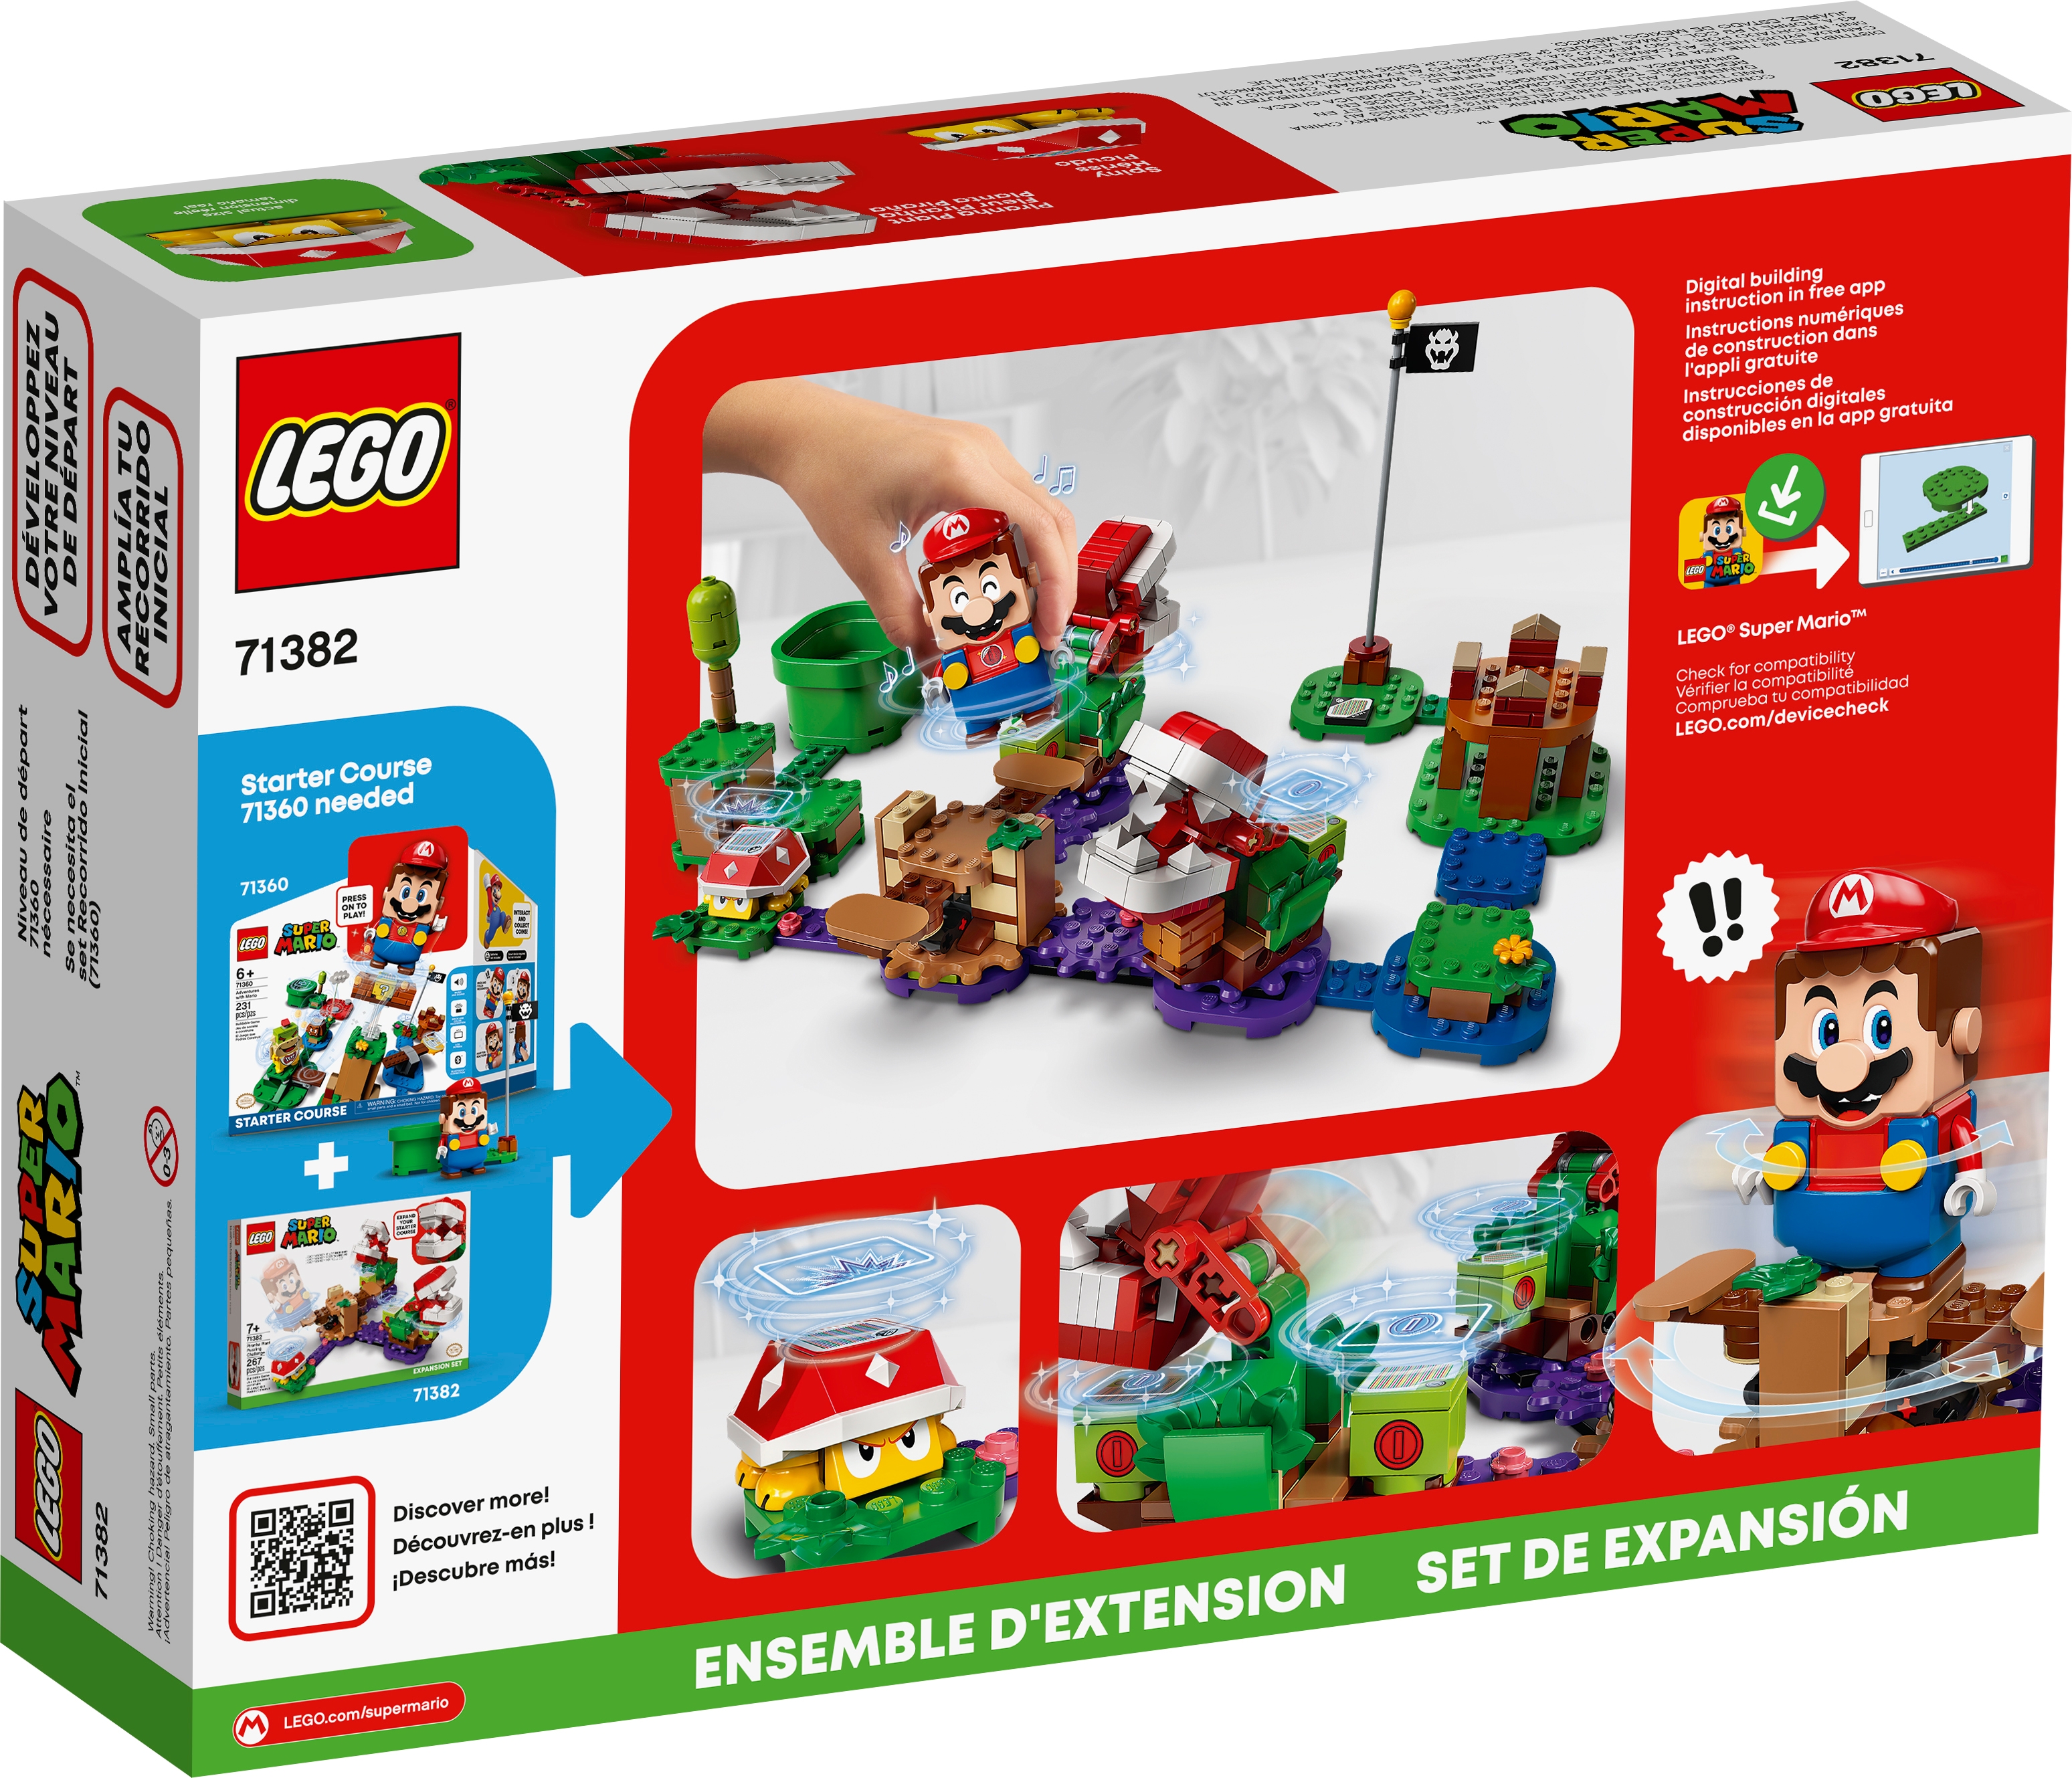 for sale online 267 Pieces LEGO Super Mario Piranha Plant Puzzling Challenge Expansion Set 71382 Building Kit 